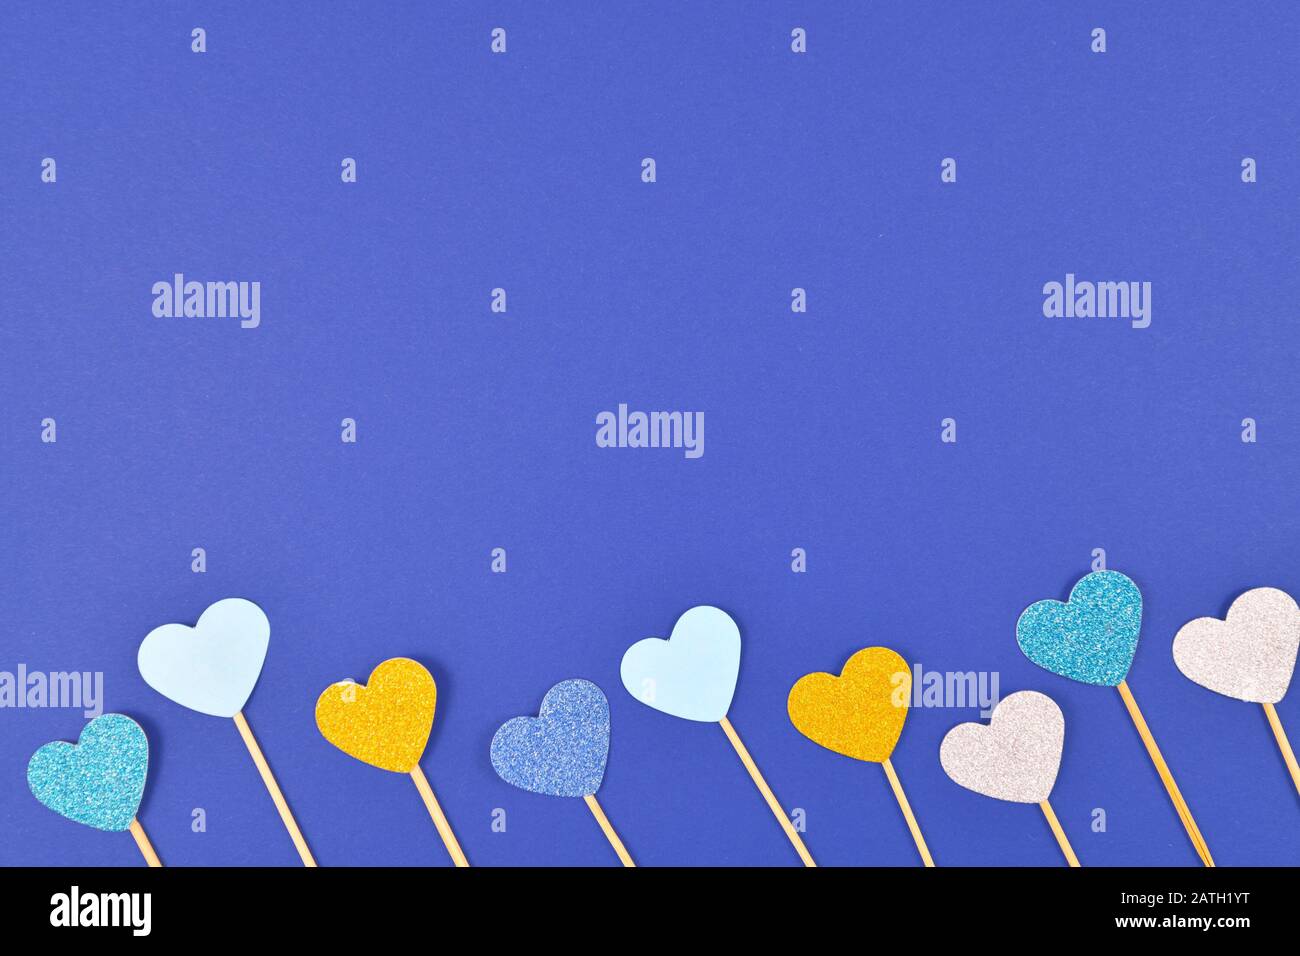 Blauer Valentinhintergrund mit glitzernden hellblauen und weißen Papierherzen unten und leerem Kopierraum oben Stockfoto